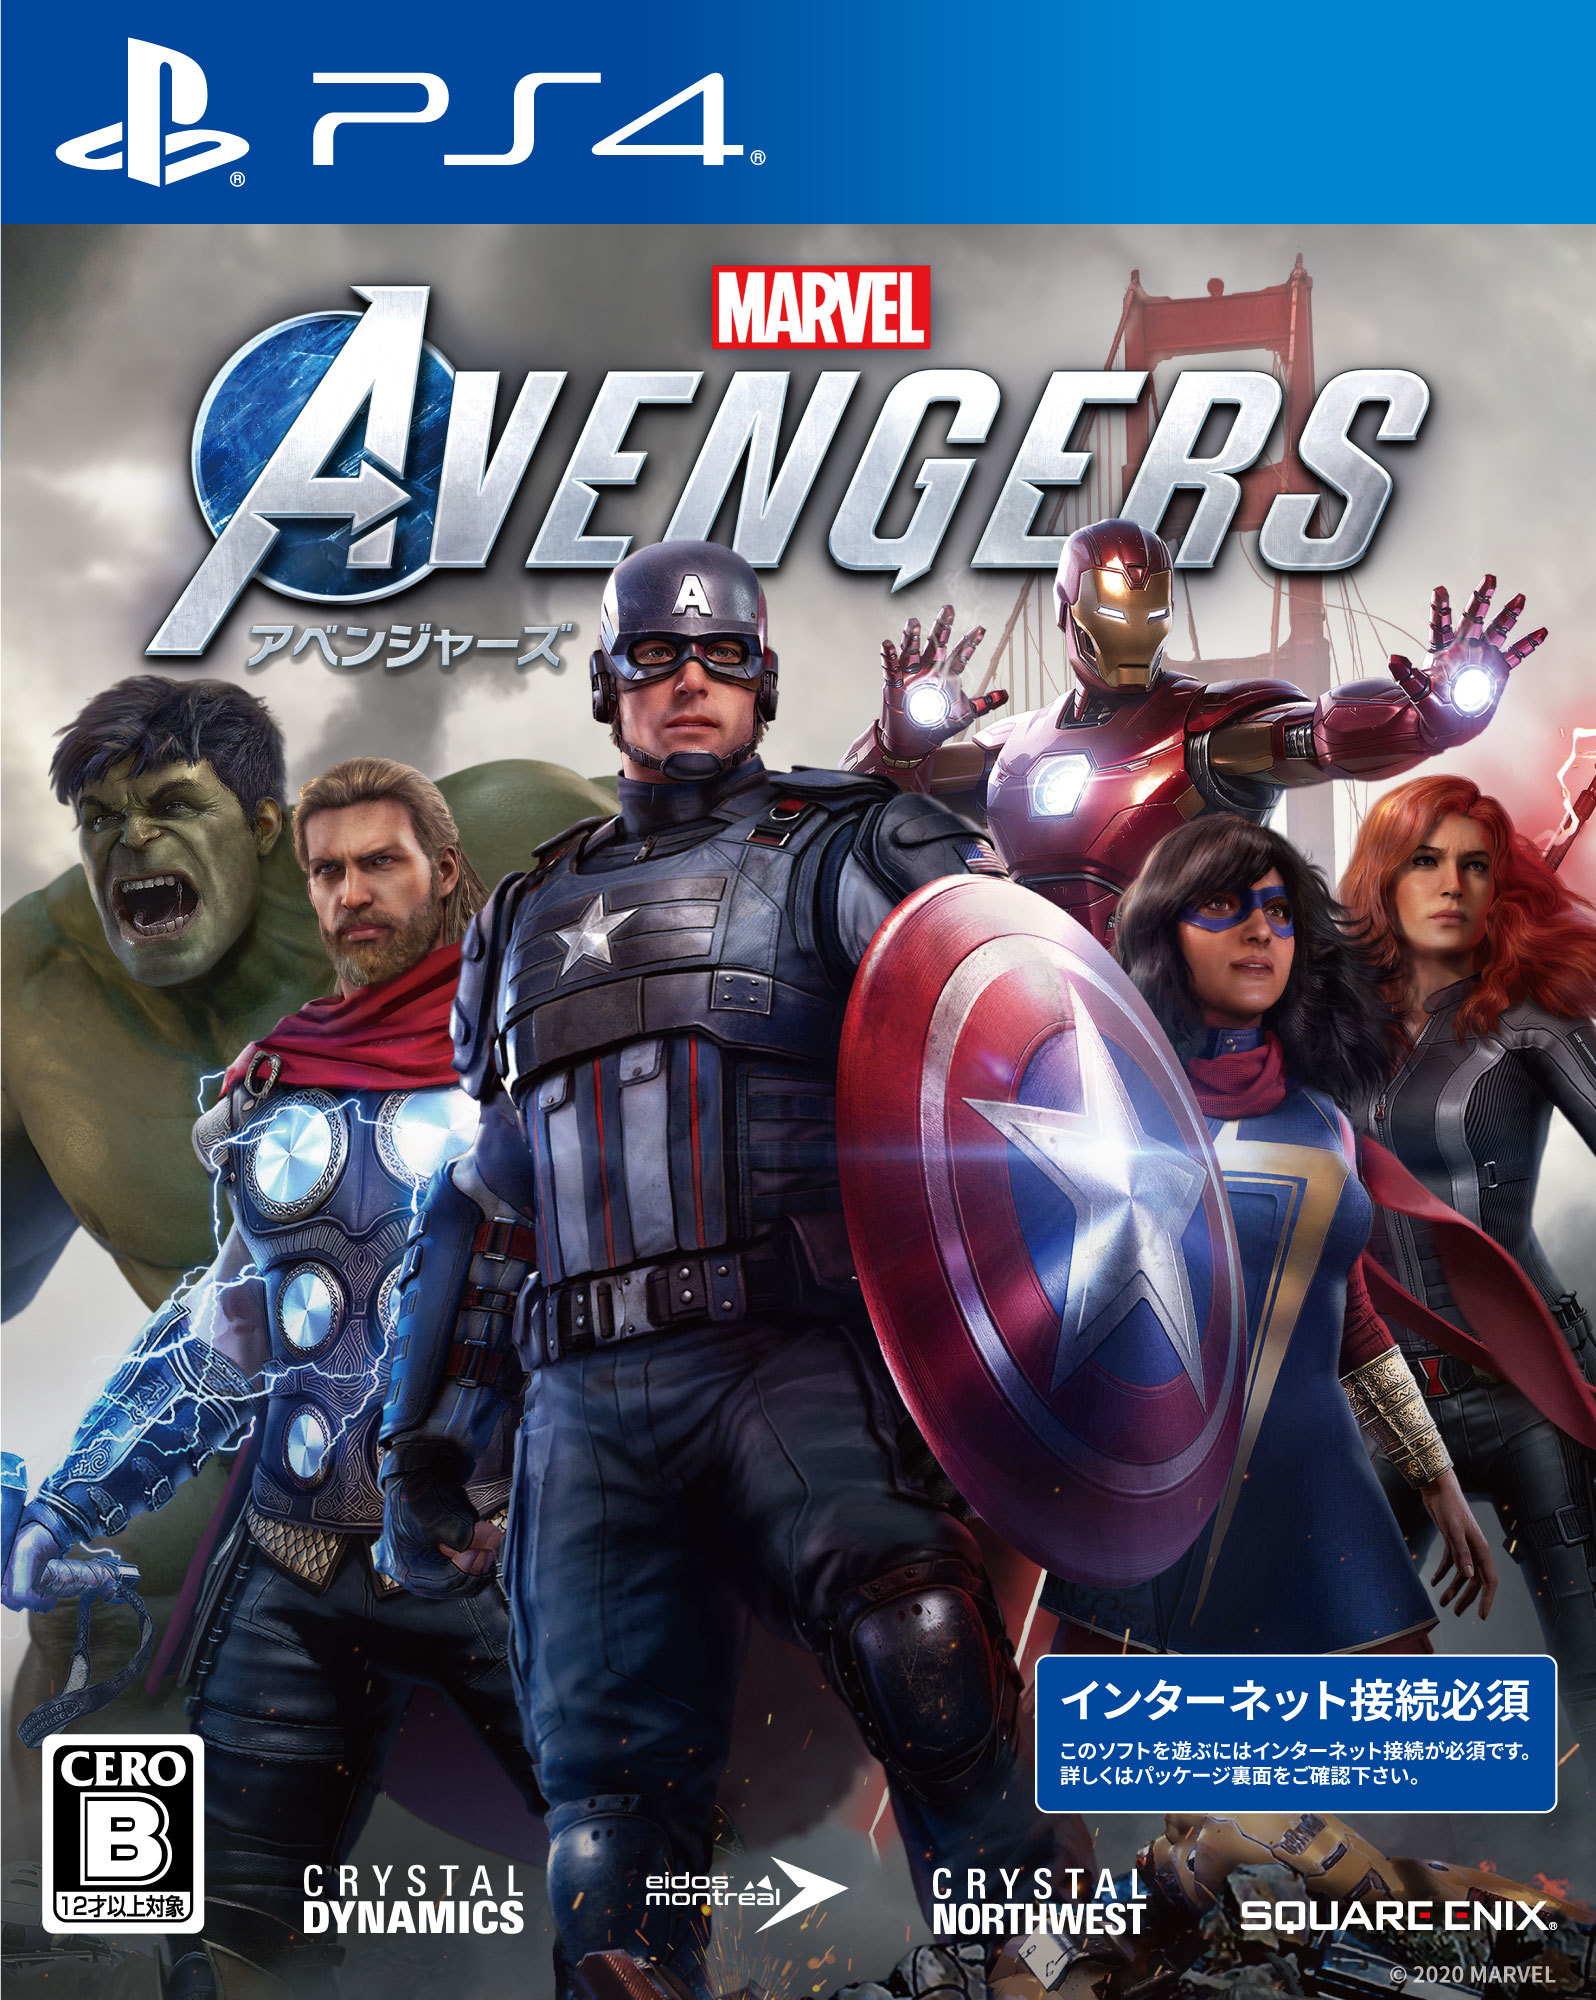 アクションアドベンチャーゲーム『Marvel’s Avengers（アベンジャーズ）』パッケージ (C) 2020 MARVEL. Developed by Crystal Dynamics and Eidos Montréal. Development support provided by Nixxes. All rights reserved.